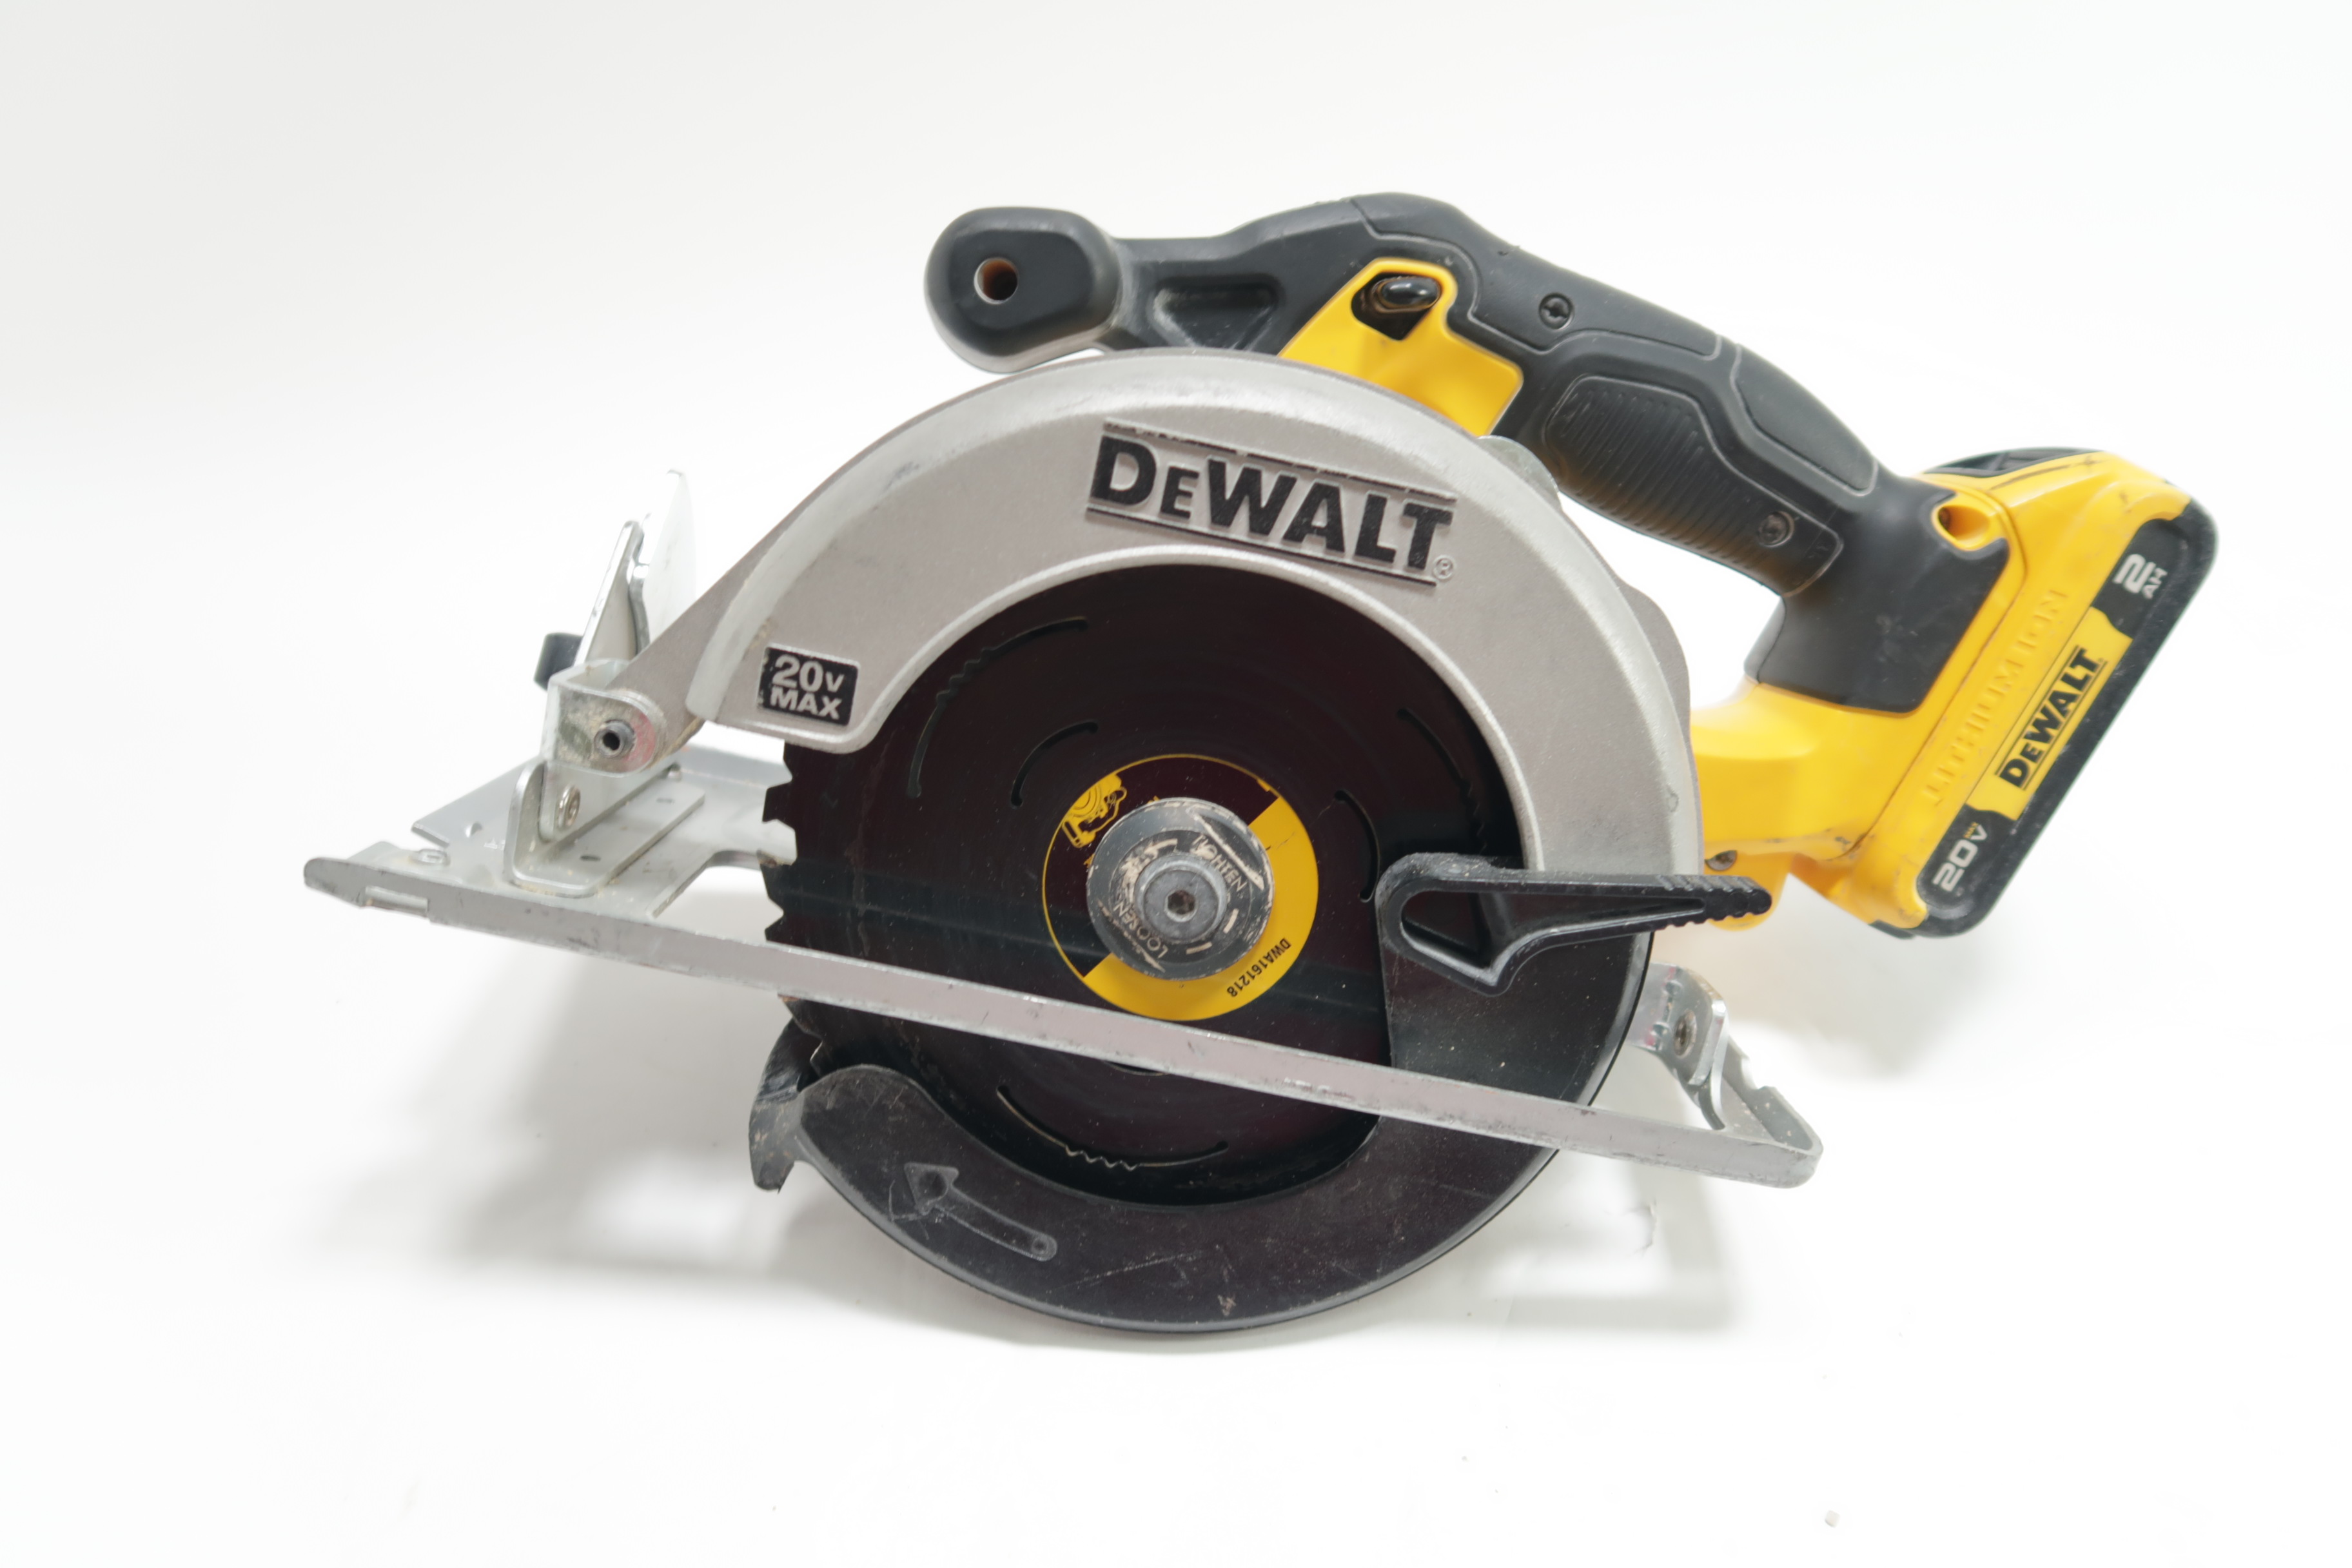 DEWALT 20V MAX Cordless 6.5 in. Sidewinder Style Circular Saw